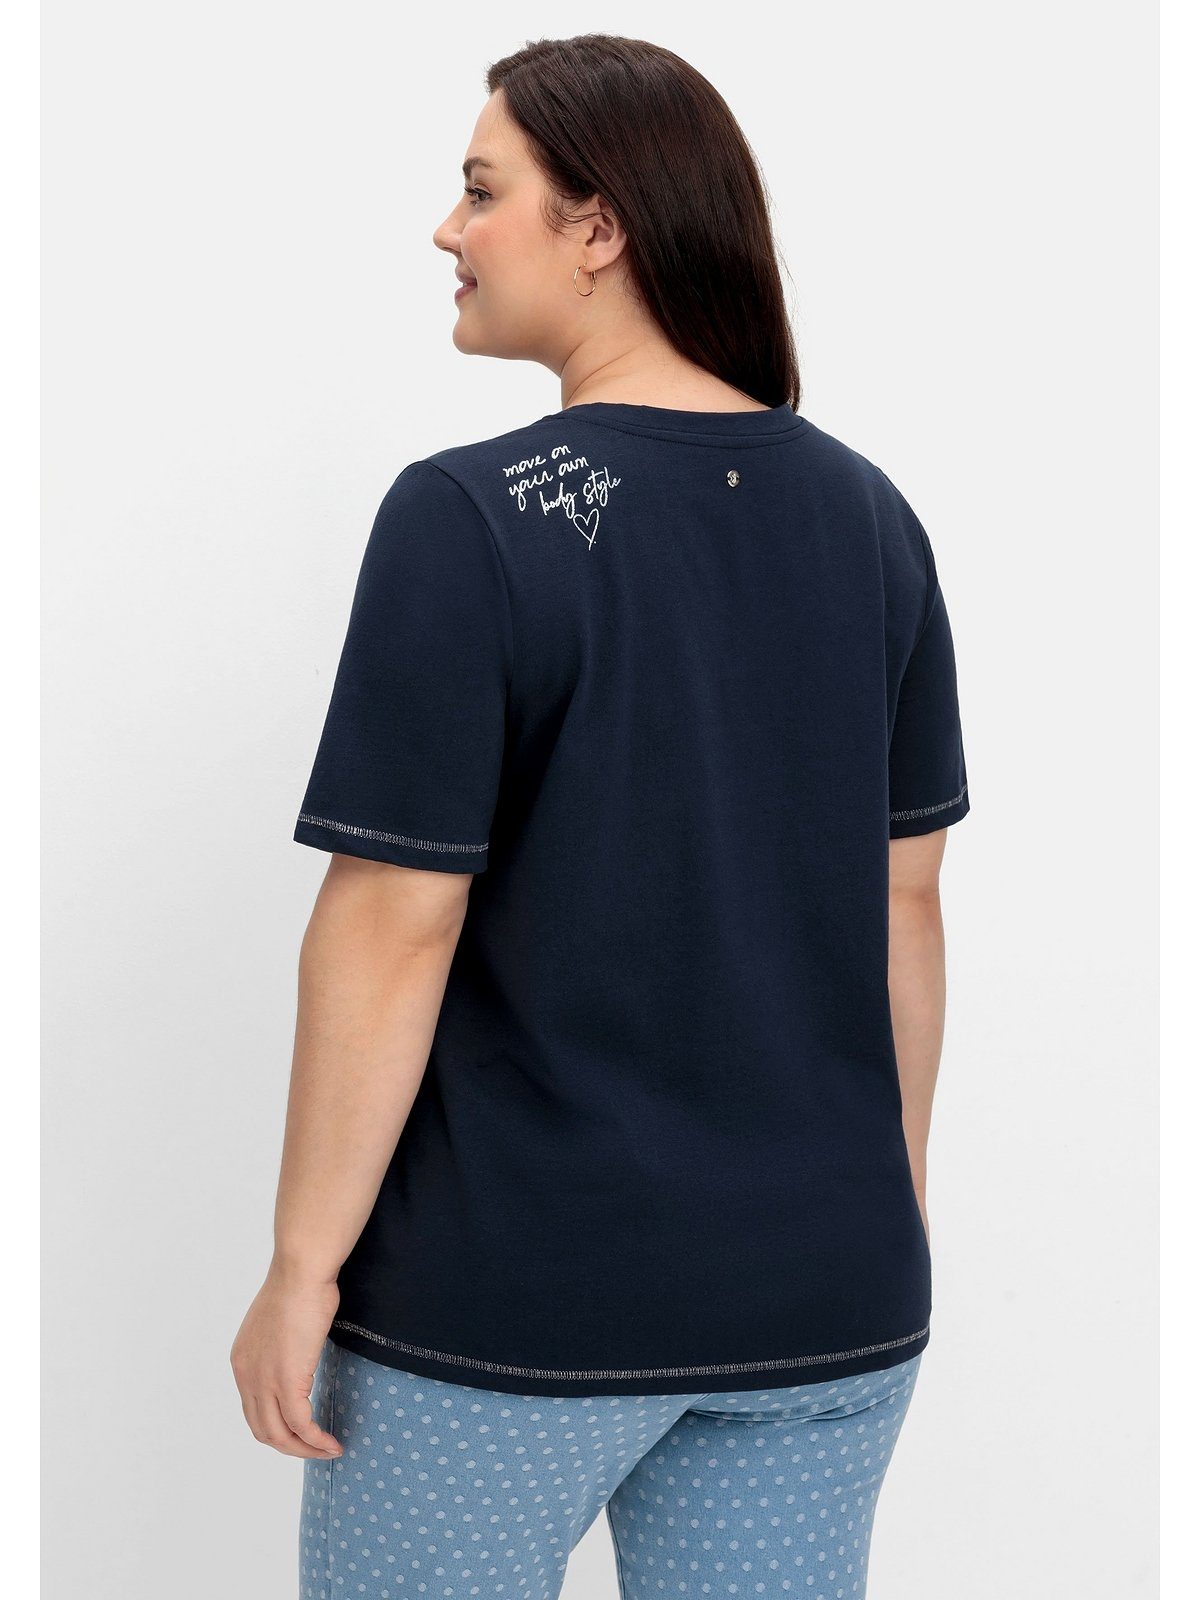 Sheego T-Shirt Große Größen mit kleinem Glitzerdruck auf der Schulter | V-Shirts